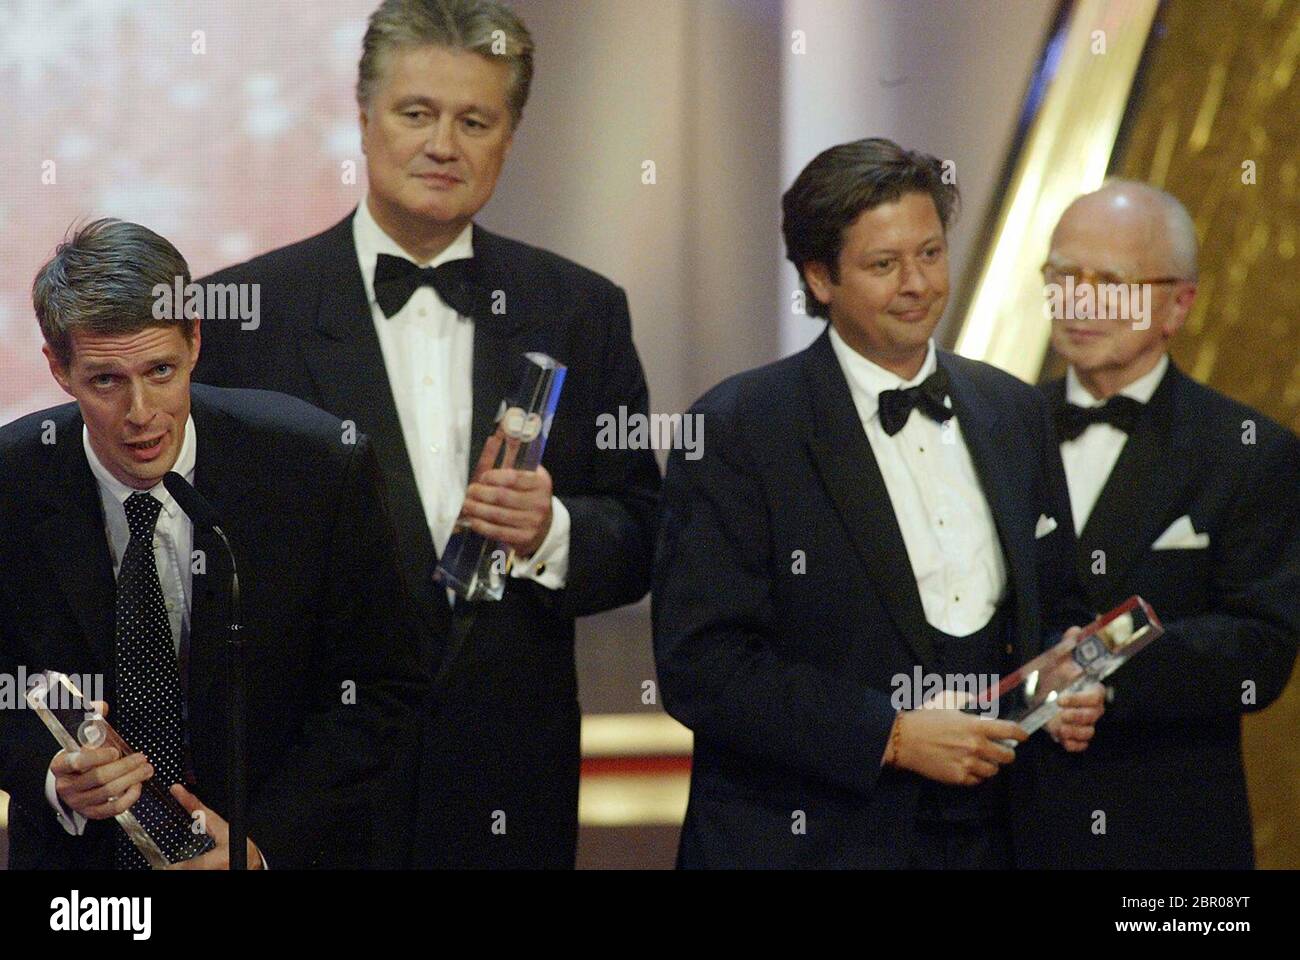 Deutscher Fernsehpreis 2004 - Verleihung des 6. Deutschen Fernsehpreises im Coloneum in Köln. Stock Photo